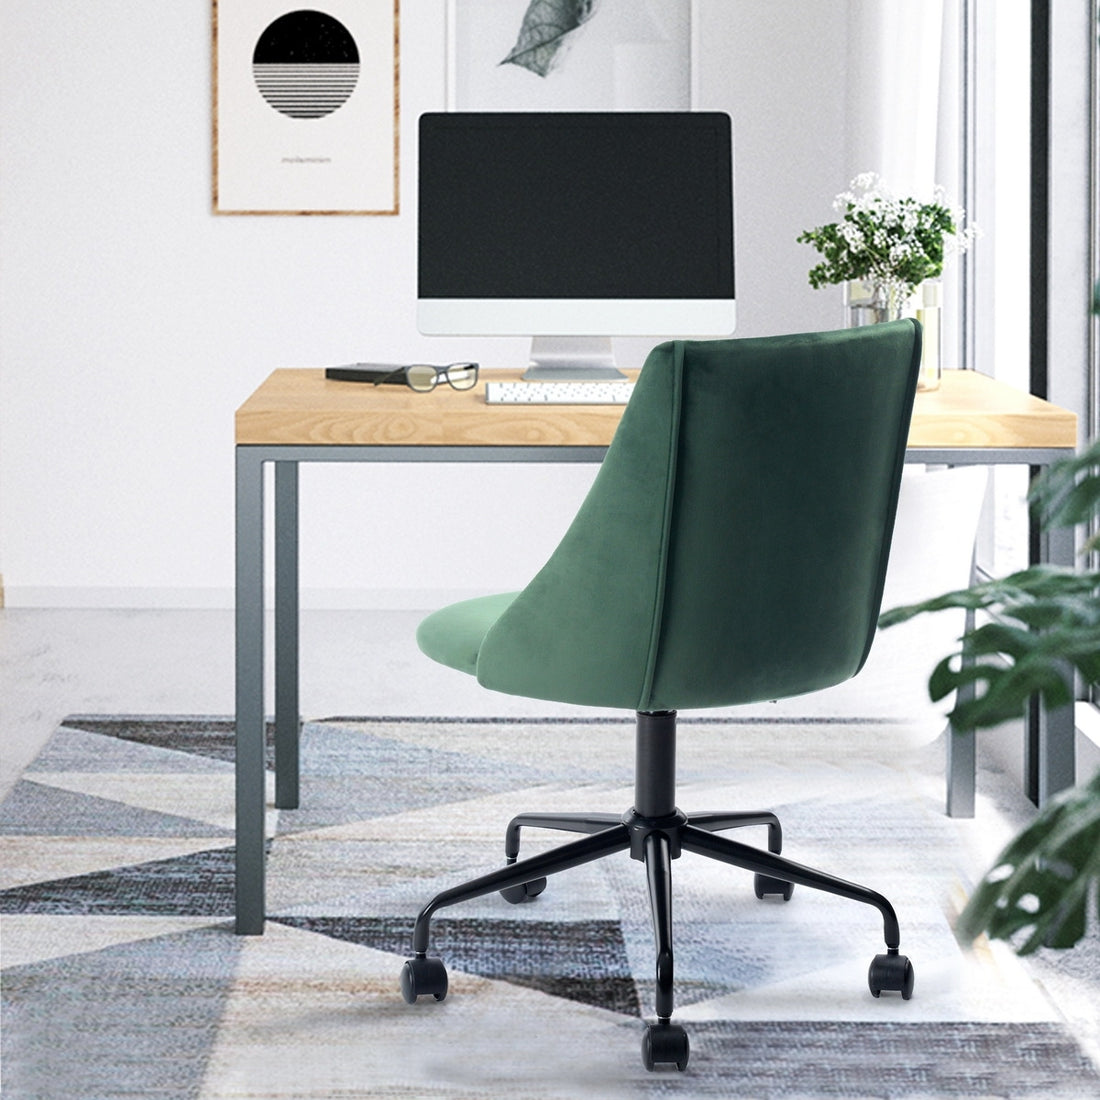 Velvet Upholstered Task Chair Home Office Chair Green green-velvet-upholstered